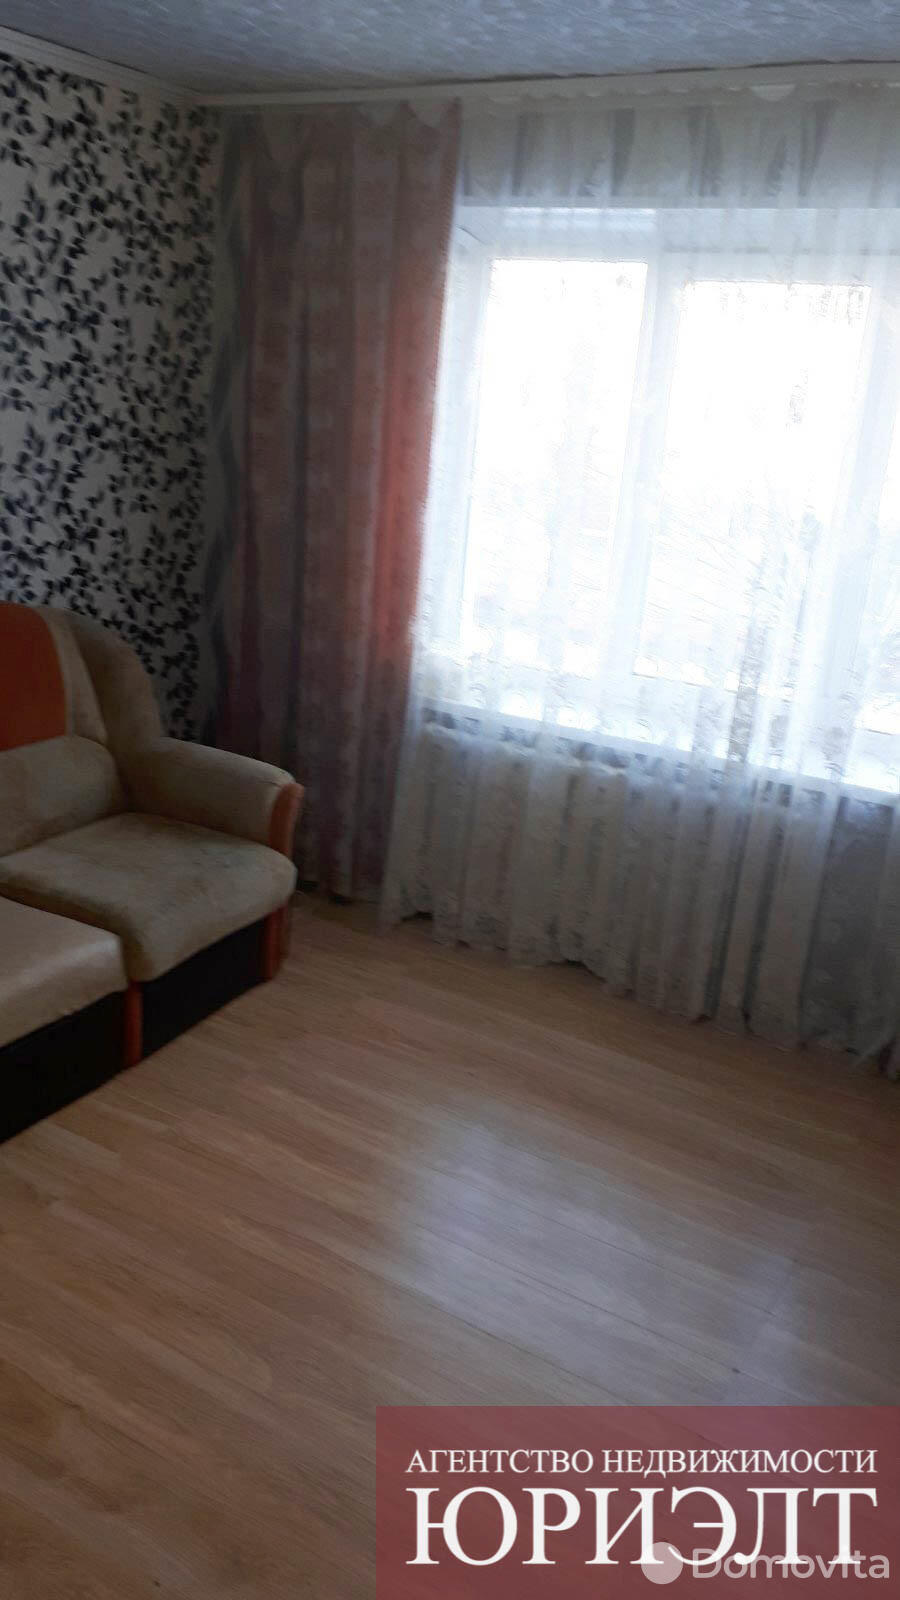 квартира, Борисов, ул. Чапаева, д. 25, стоимость продажи 113 907 р.